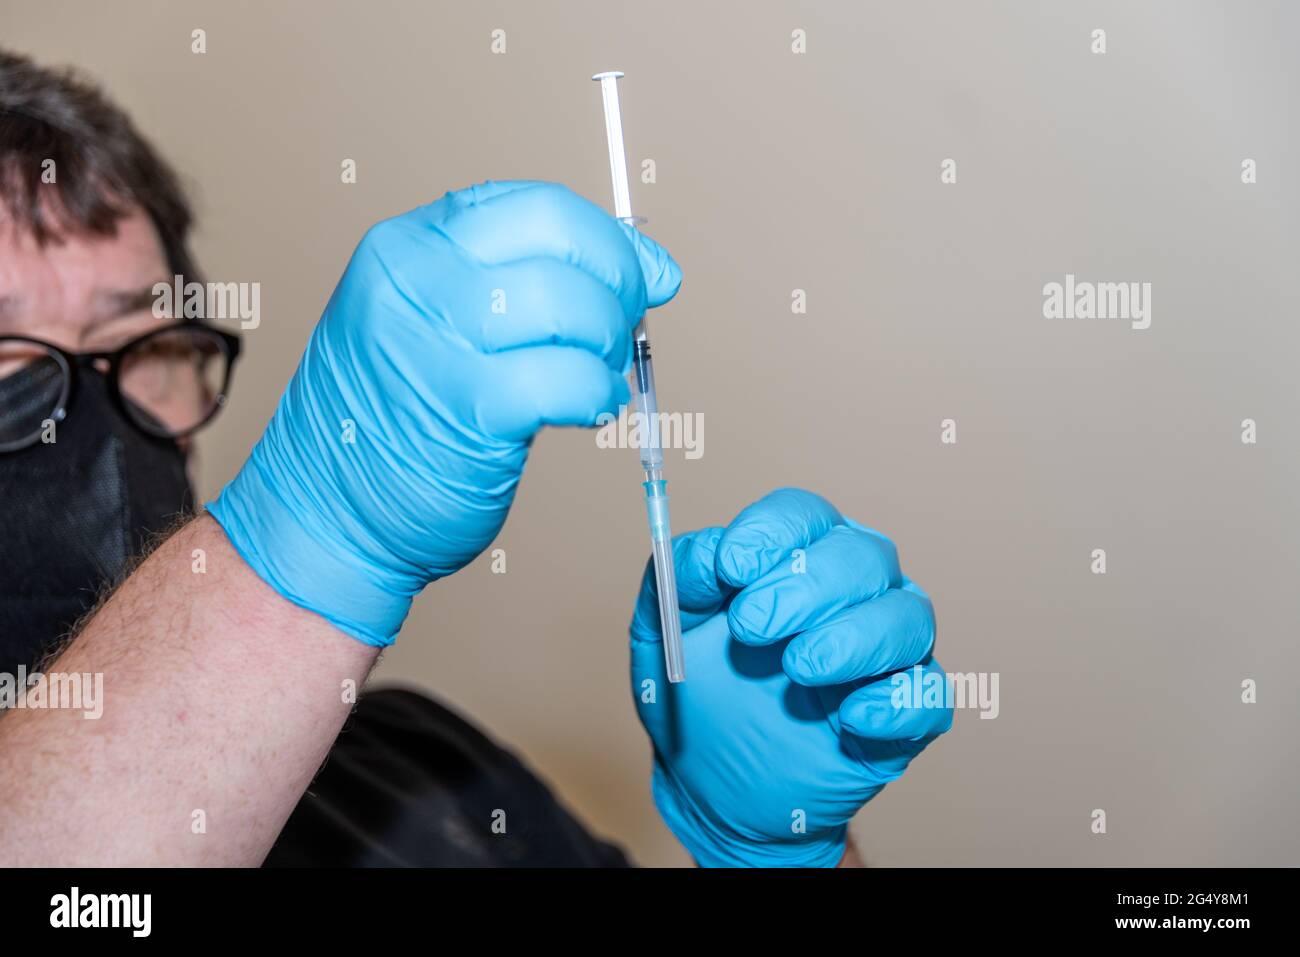 Aufziehen einer Impfdosis aus der Impfstoffampulle in die Injektionsspritze durchn einen Arzt Stock Photo